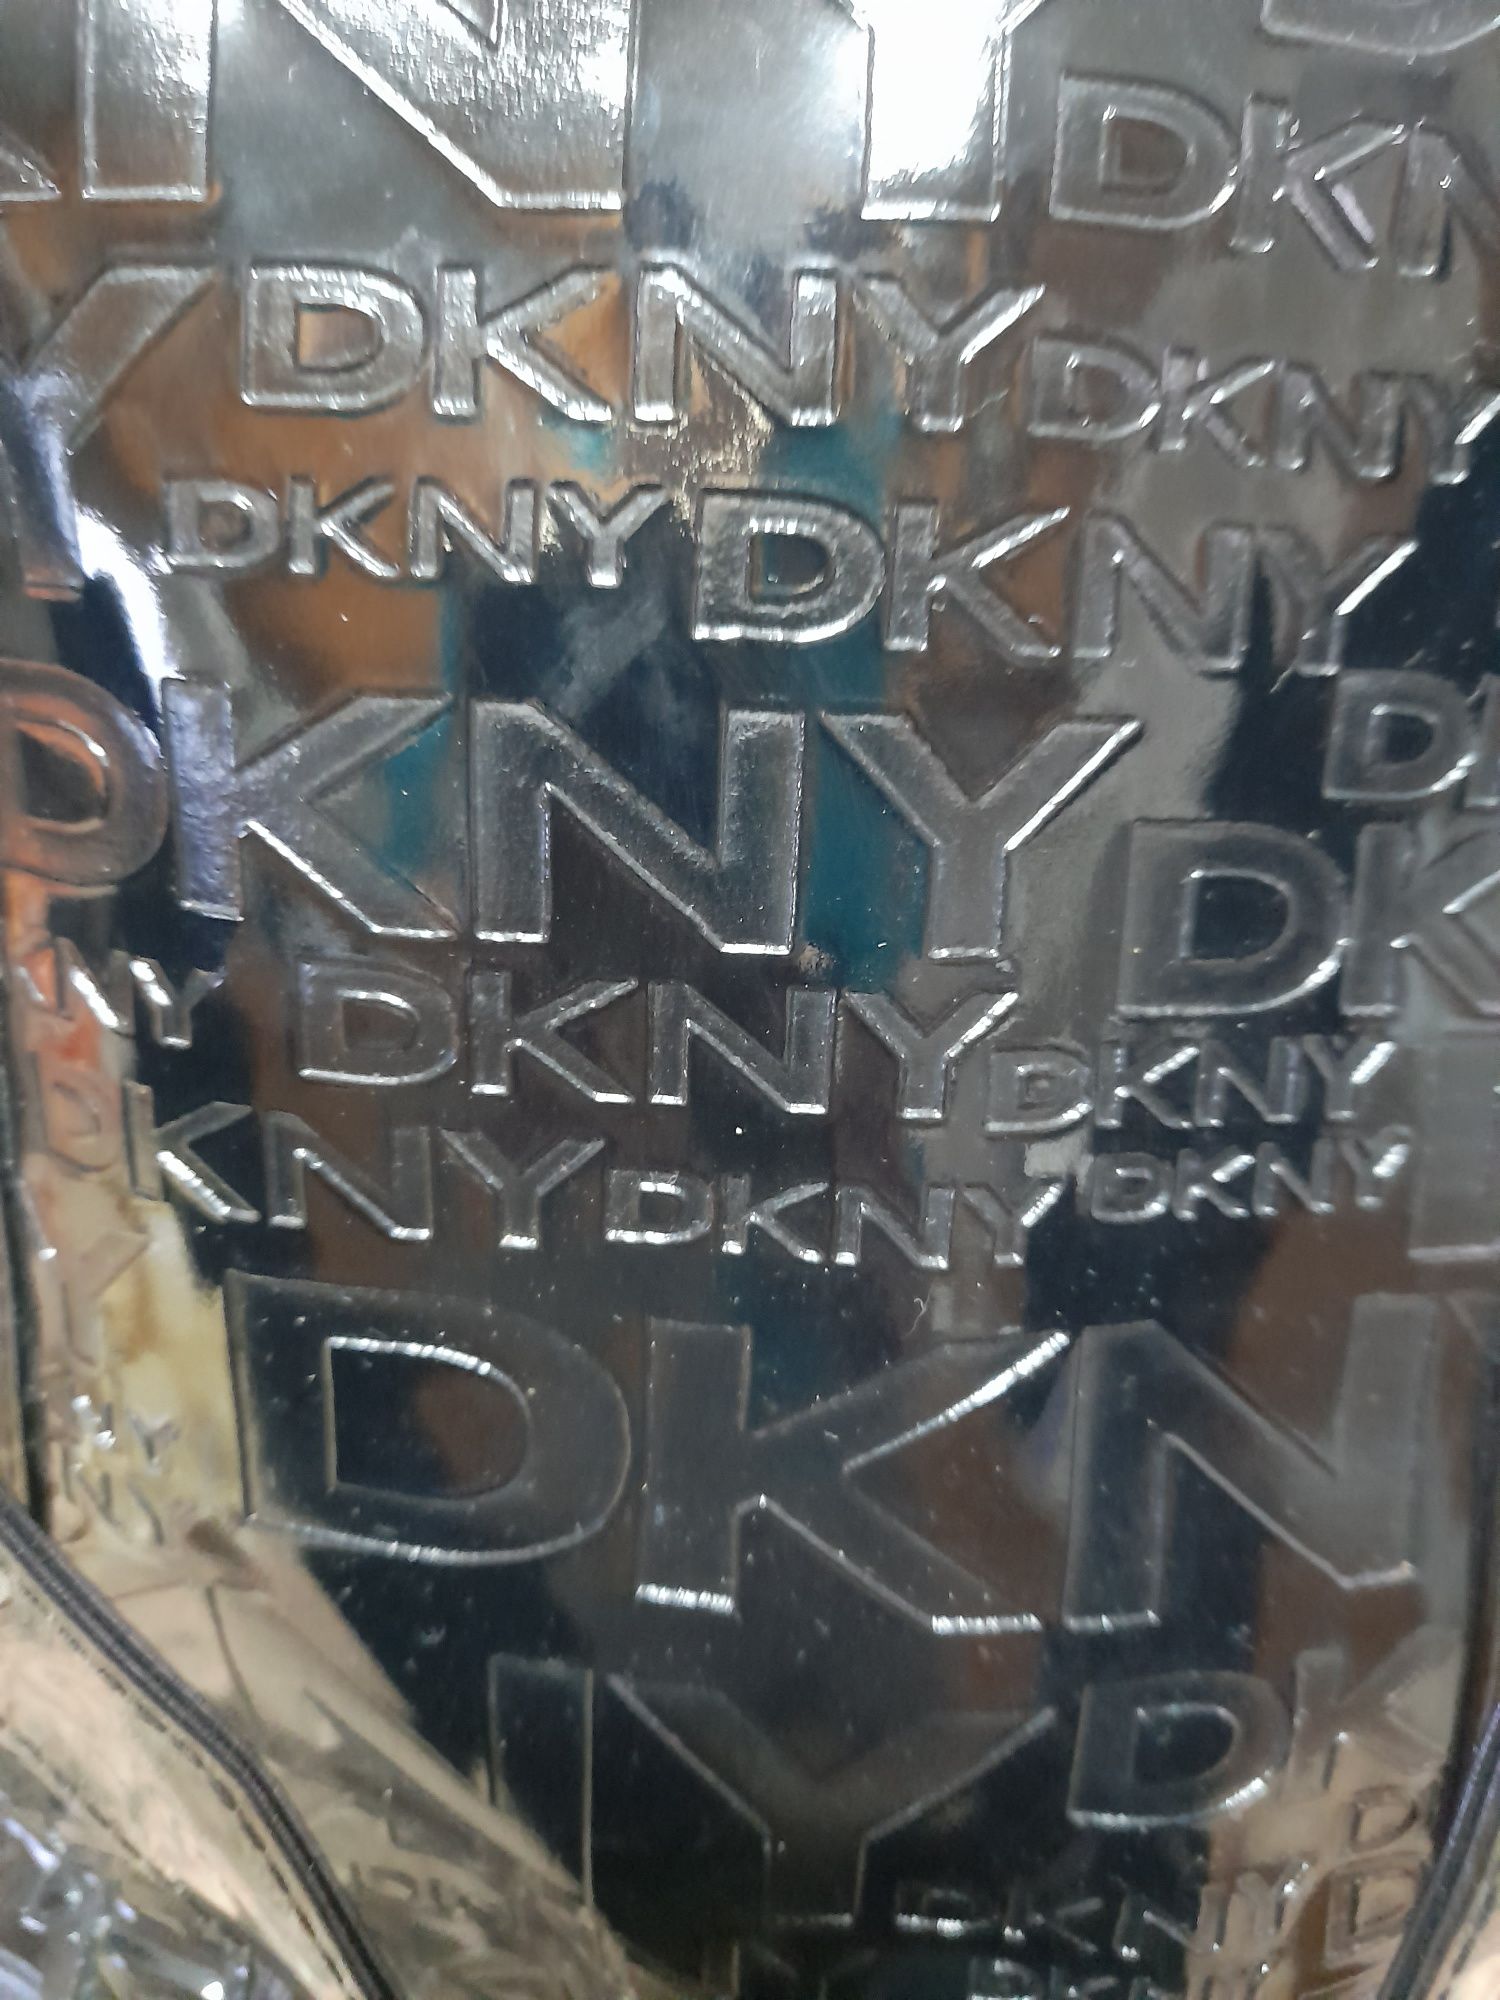 Mala e carteira DKNY em plástico